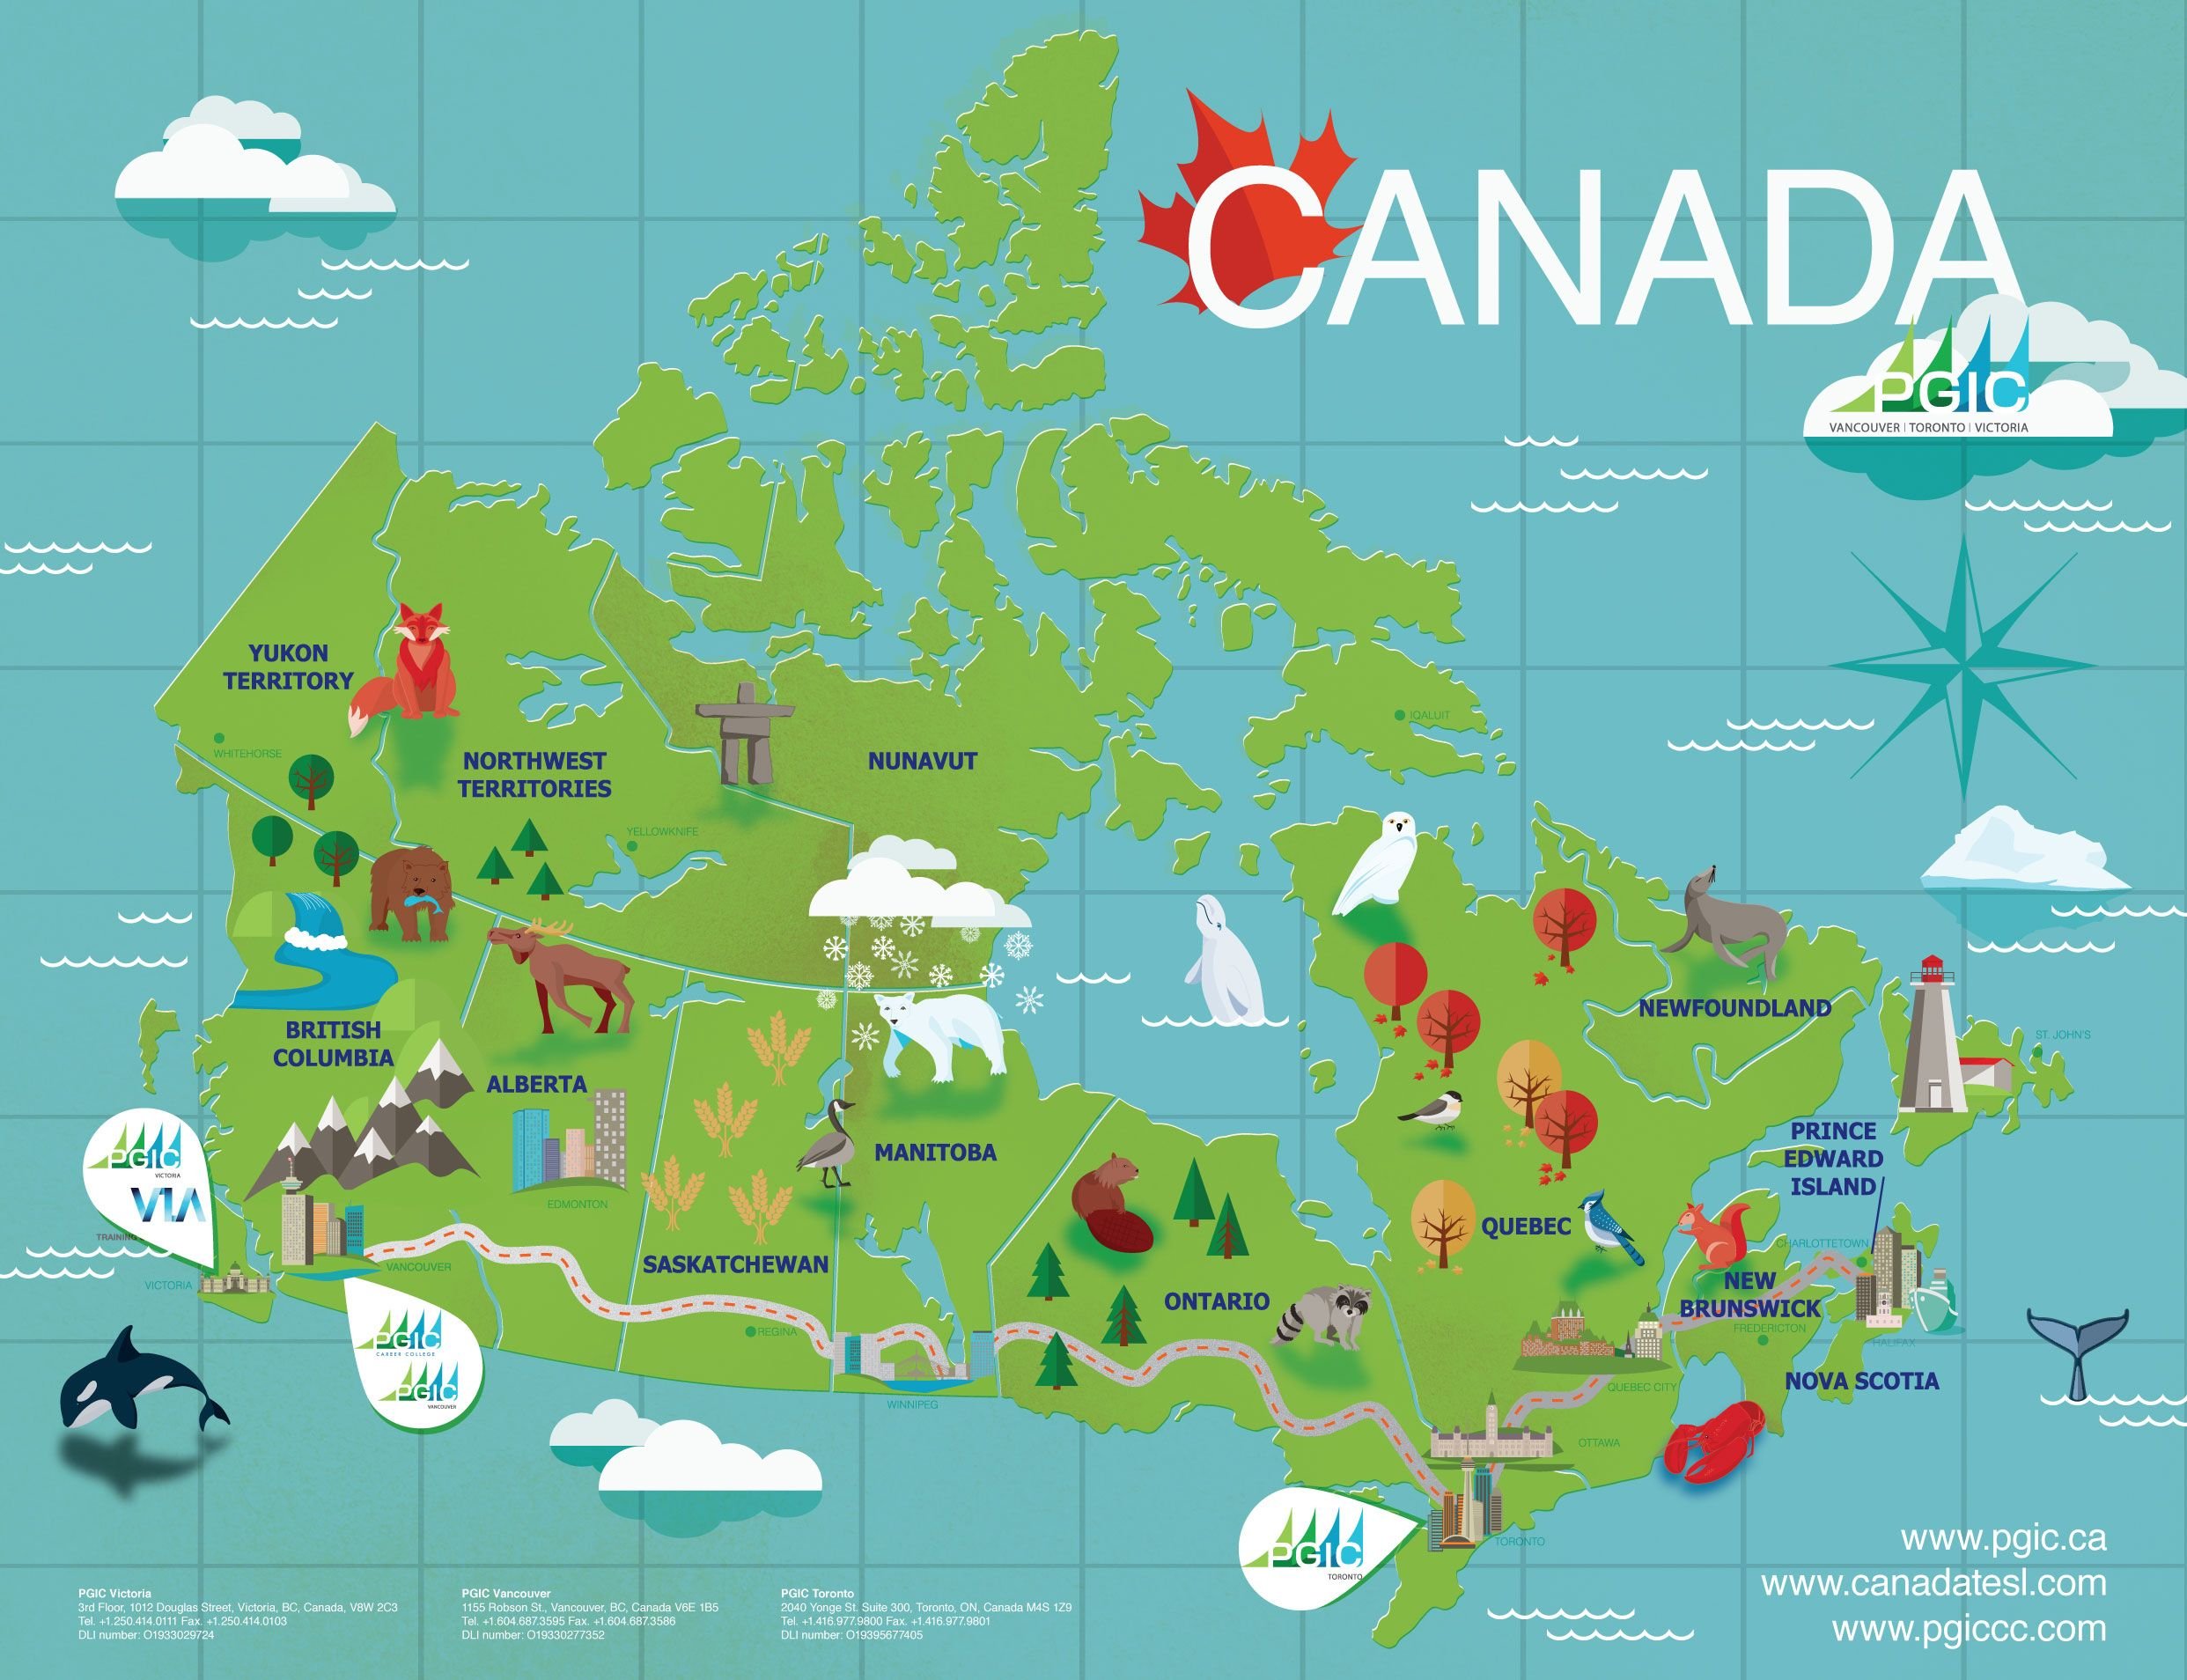 Туристические маршруты америки. Туристическая карта Канады. Туристические центры Канады на карте. Туристская карта Канады. Туристические центры Канады.